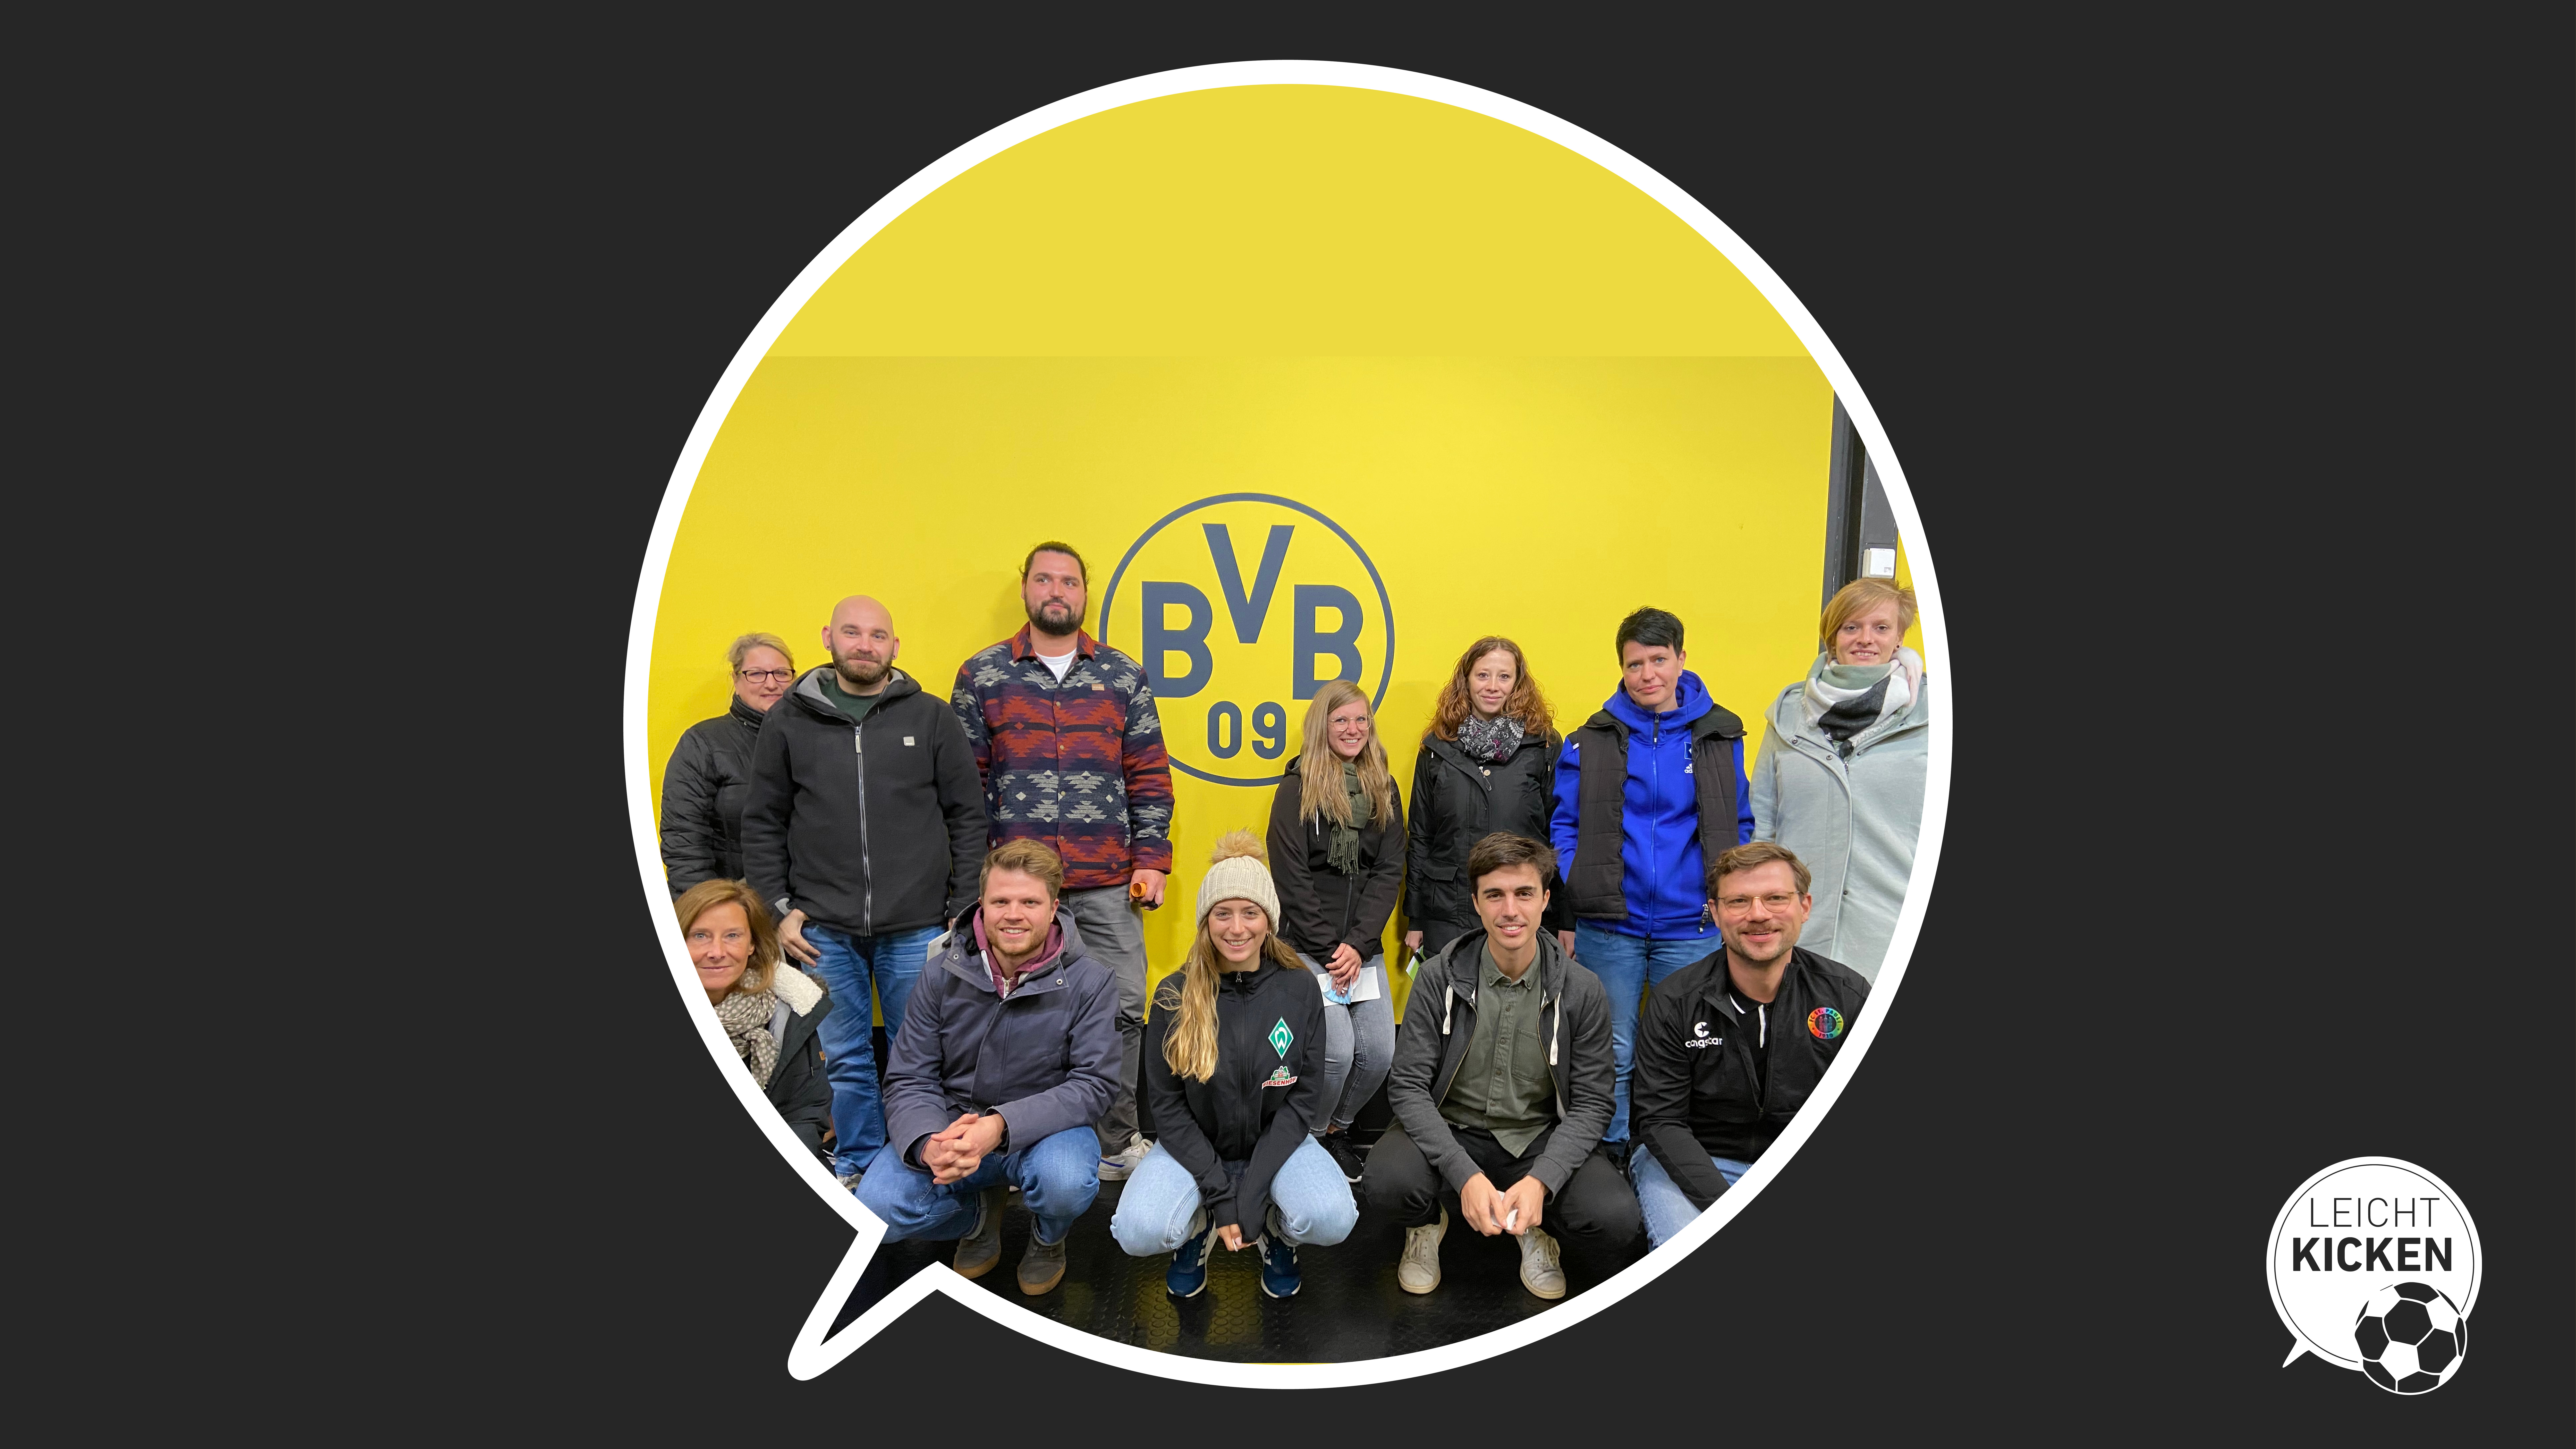 Gruppenfoto der Teilnehmenden des Projektgruppentreffens vor einem BVB-Wappen.